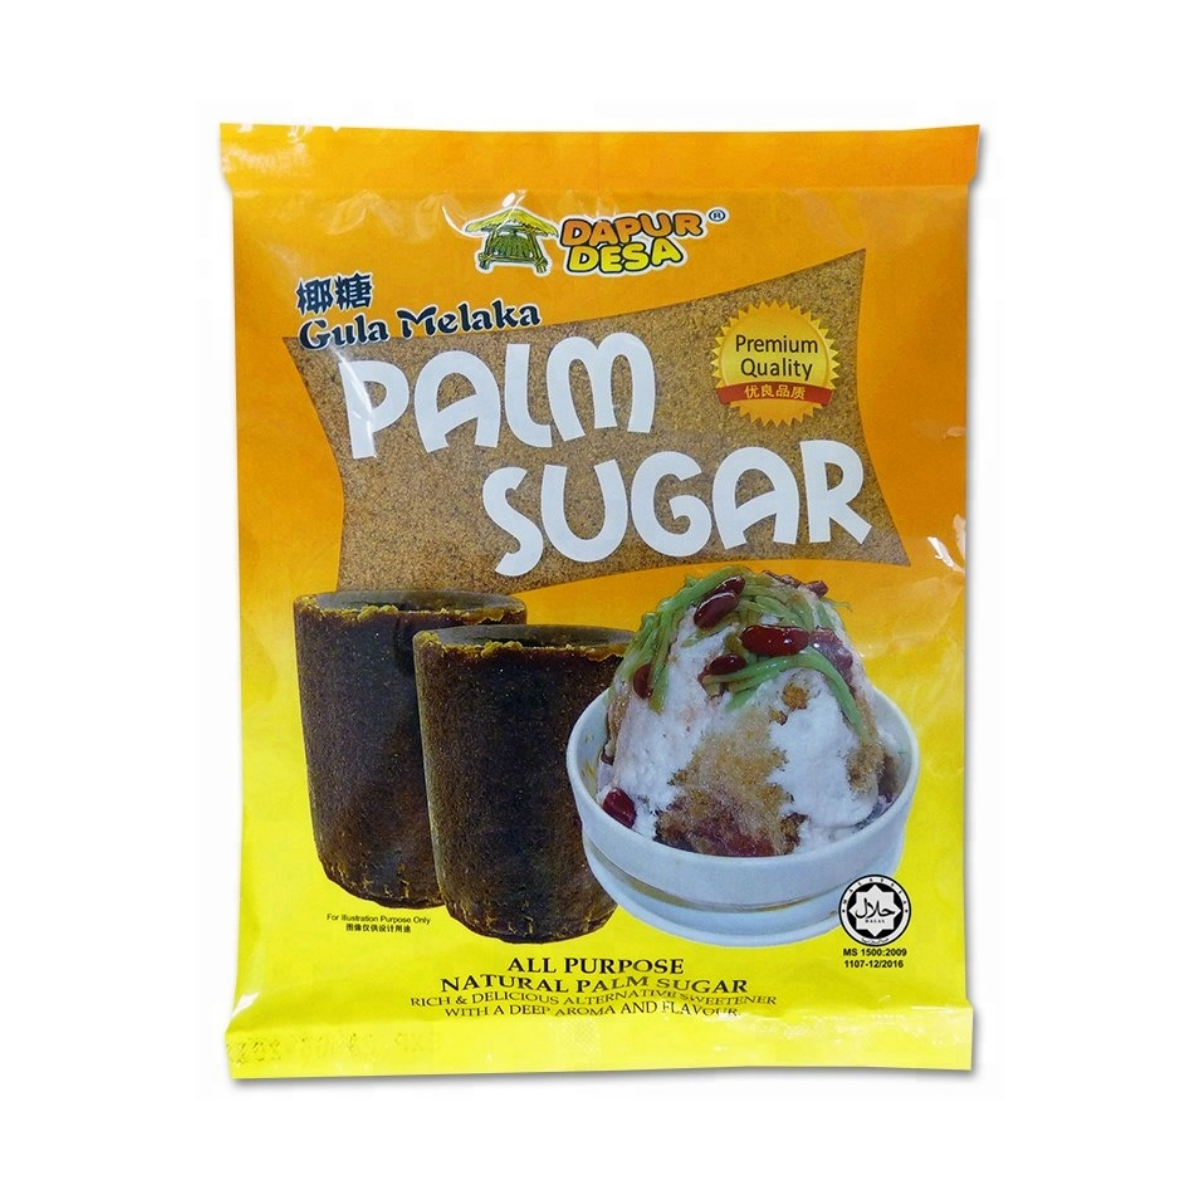 Dapur Desa Palm Sugar 400g